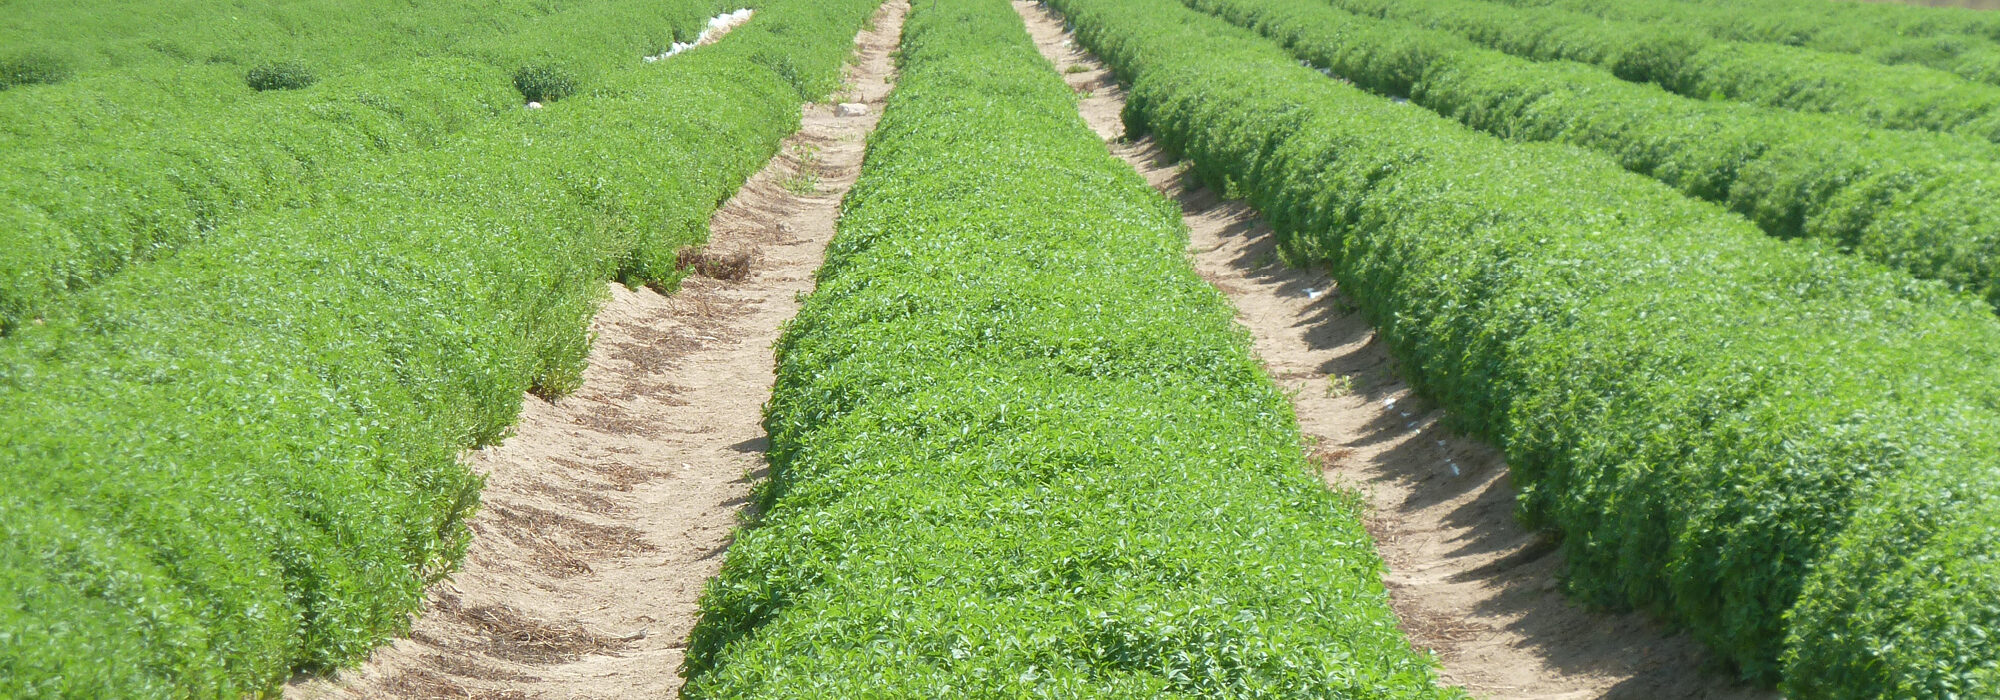 Stevia field, Peru